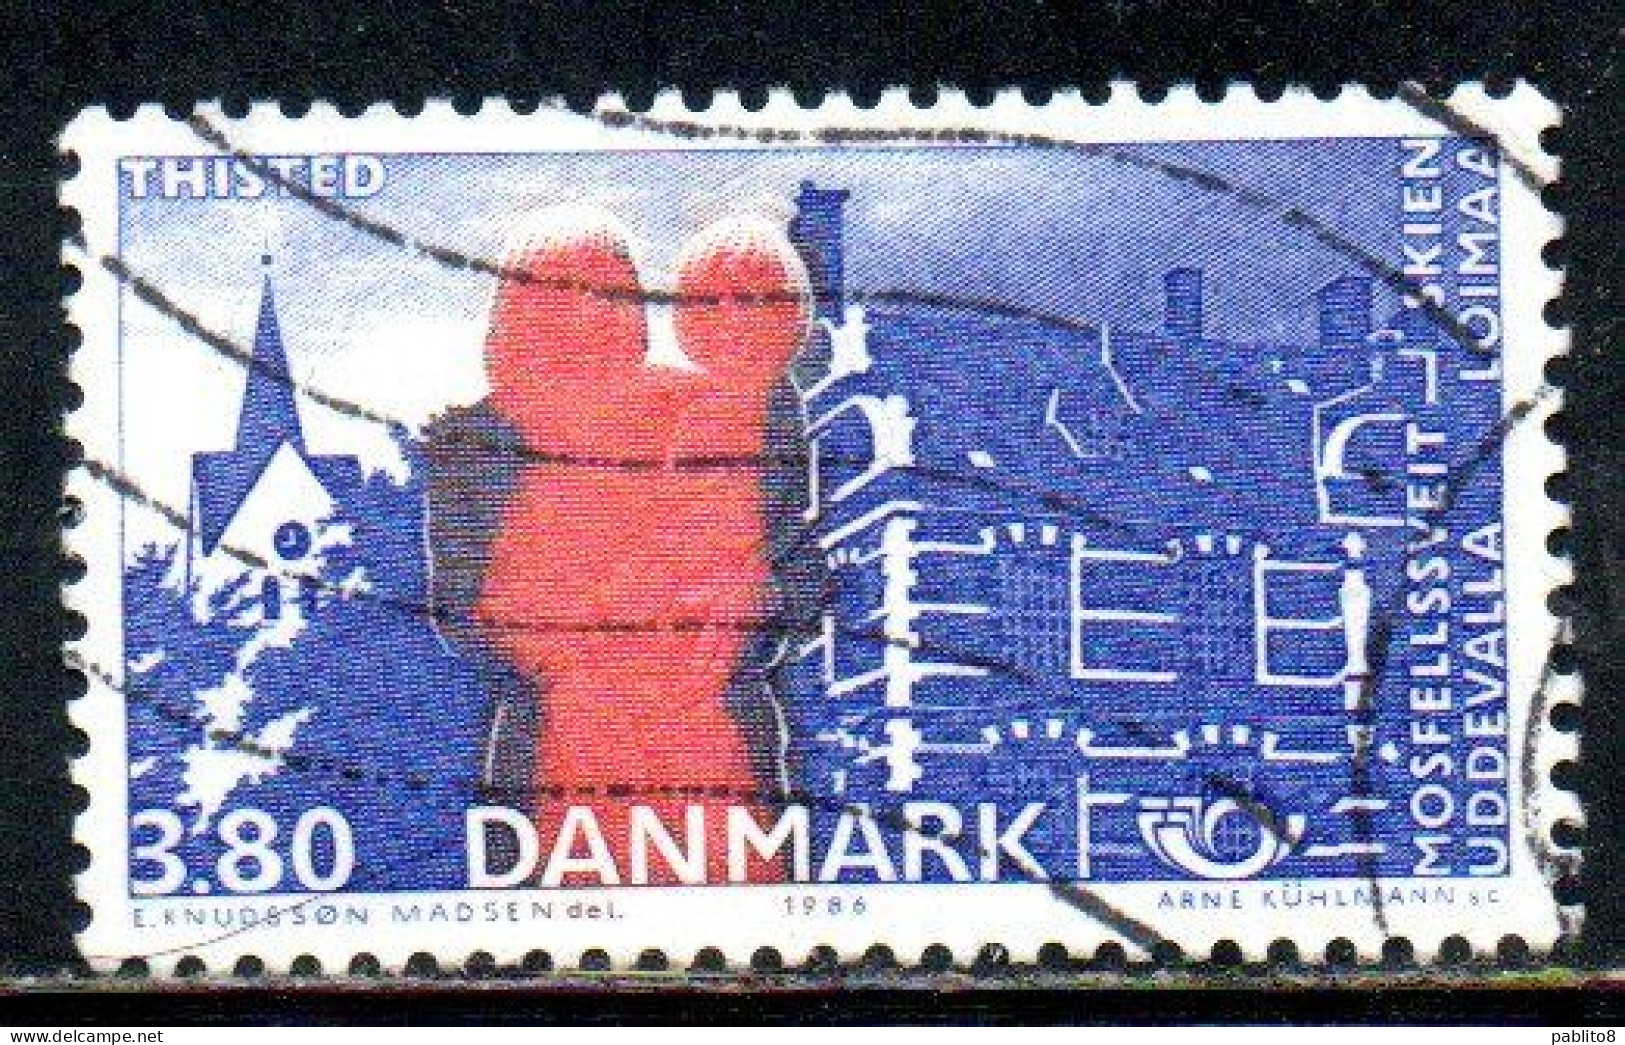 DANEMARK DANMARK DENMARK DANIMARCA 1986 NORDIC COOPERATION ISSUE THISTED CHURCH HARBOR 3.80k USED USATO OBLITERE' - Gebruikt